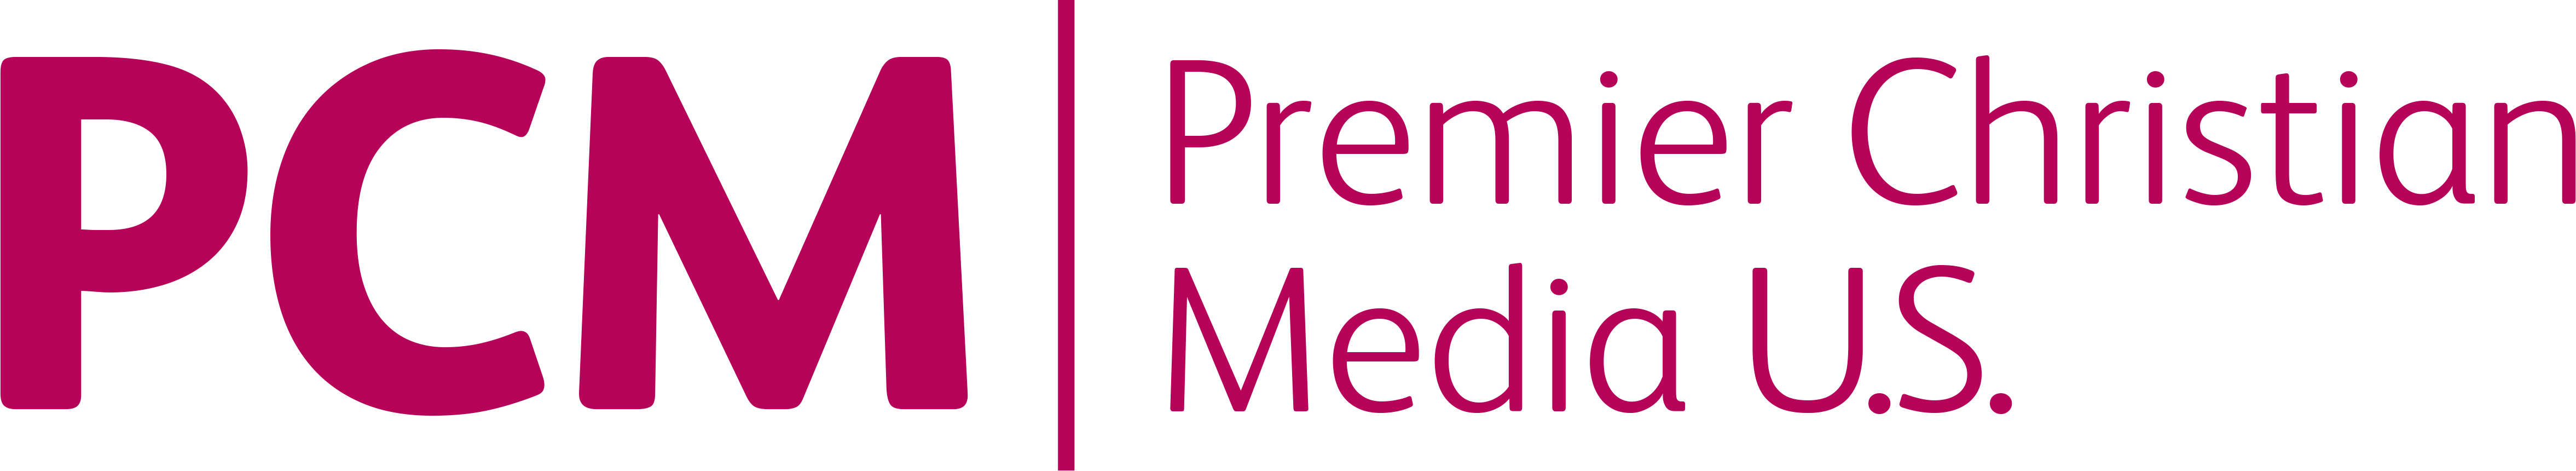 Premier Christian Media U.S. Logo